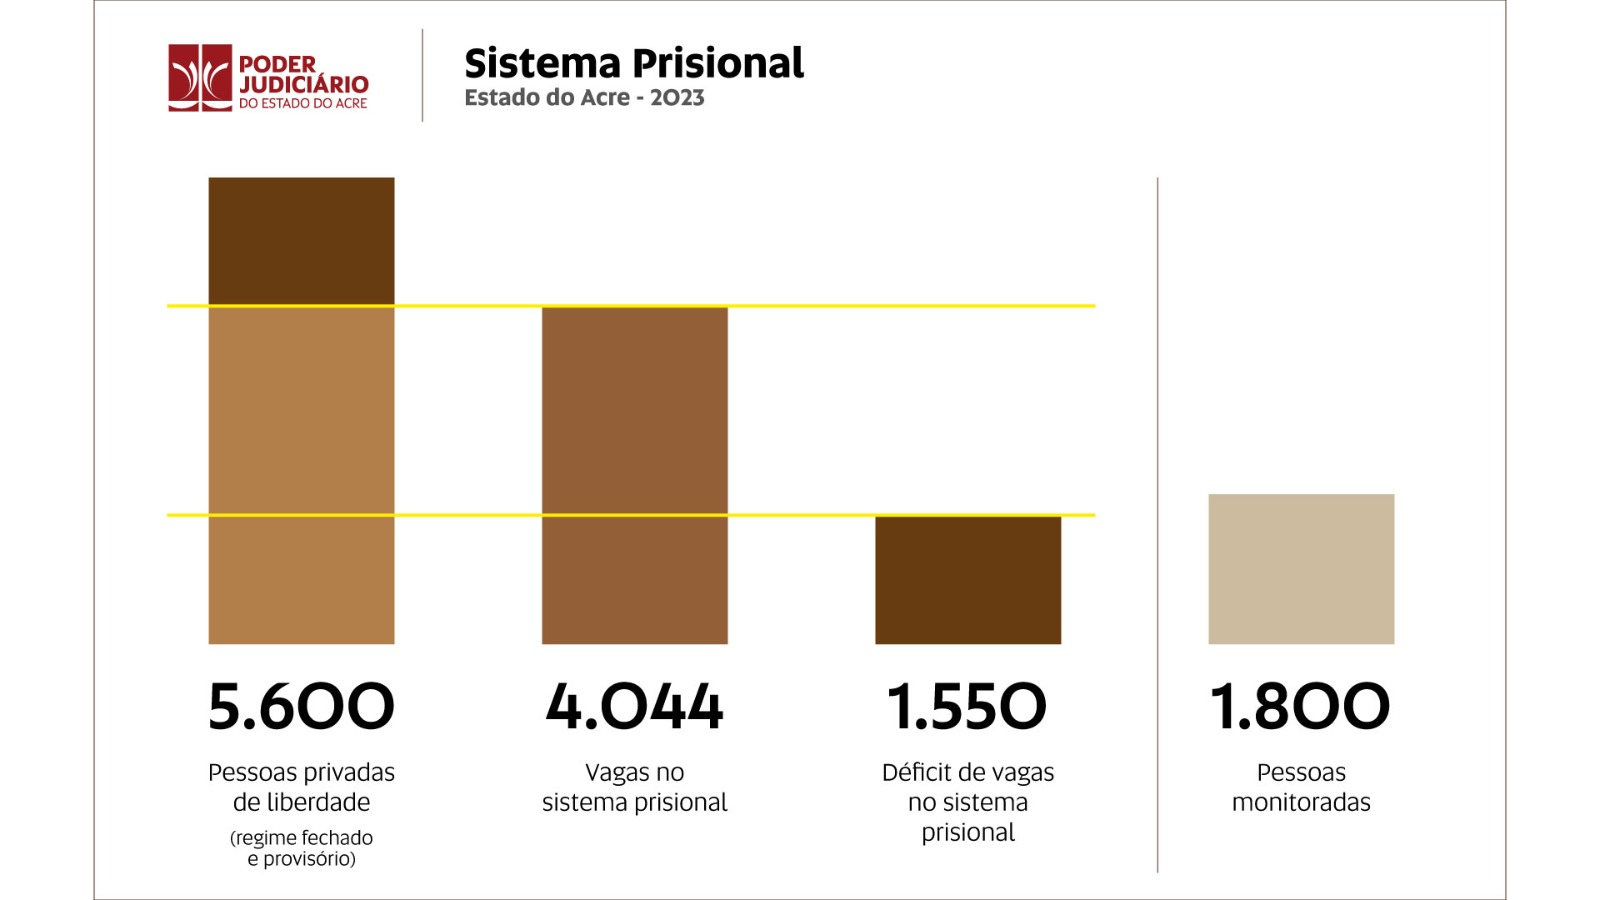 Gráfico do quantitativo de pessoas do sistema prisional do Acre em 2023, de acordo com as informações apresentadas no último parágrafo do texto